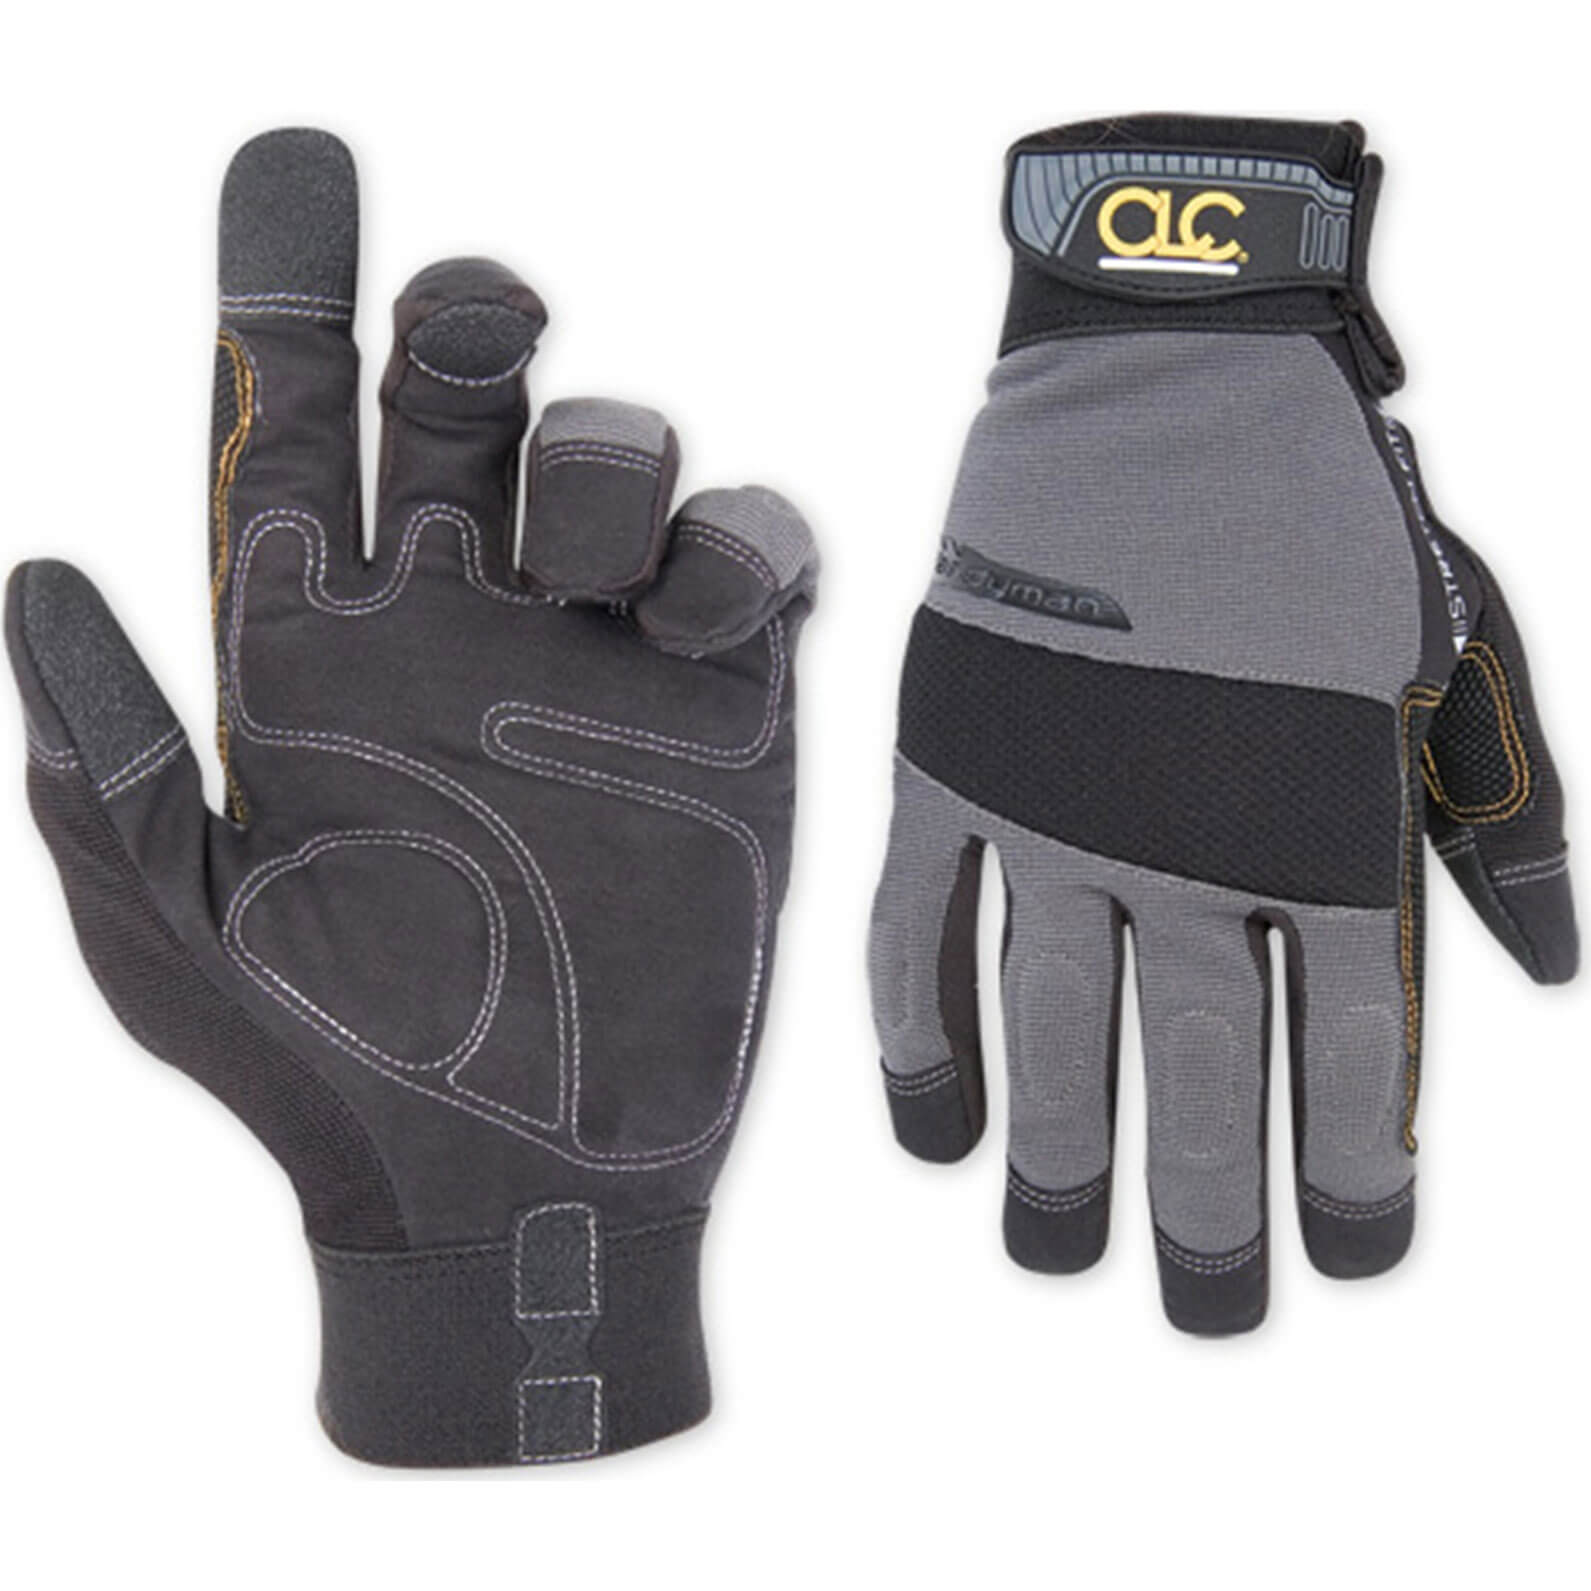 Kunys Flex Grip Handyman Gloves | Work Gloves